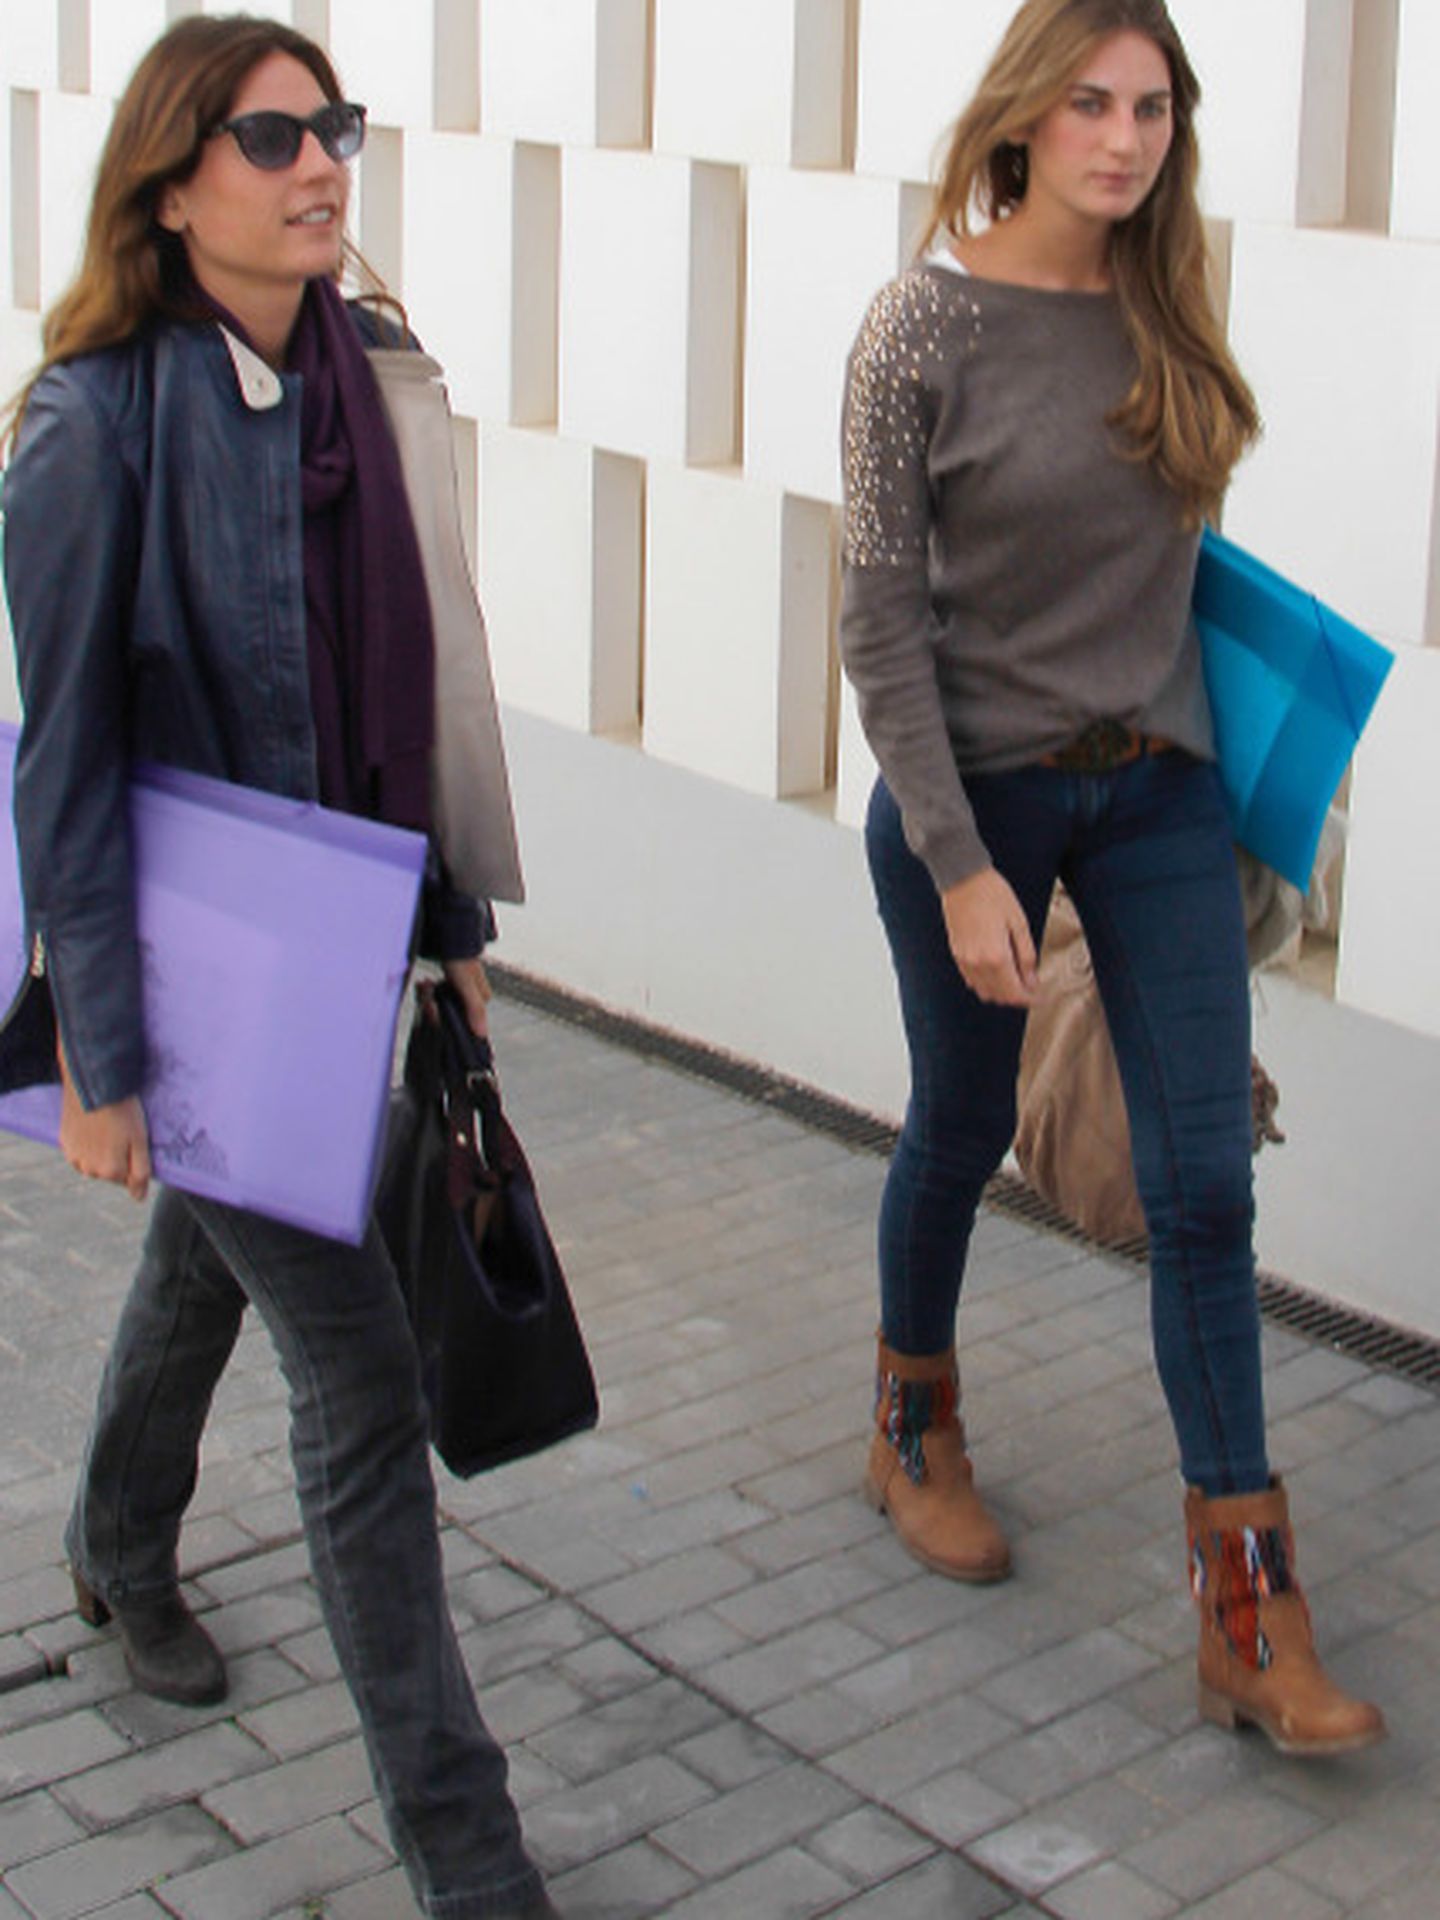 Lourdes y Sibi de camino a sus clases